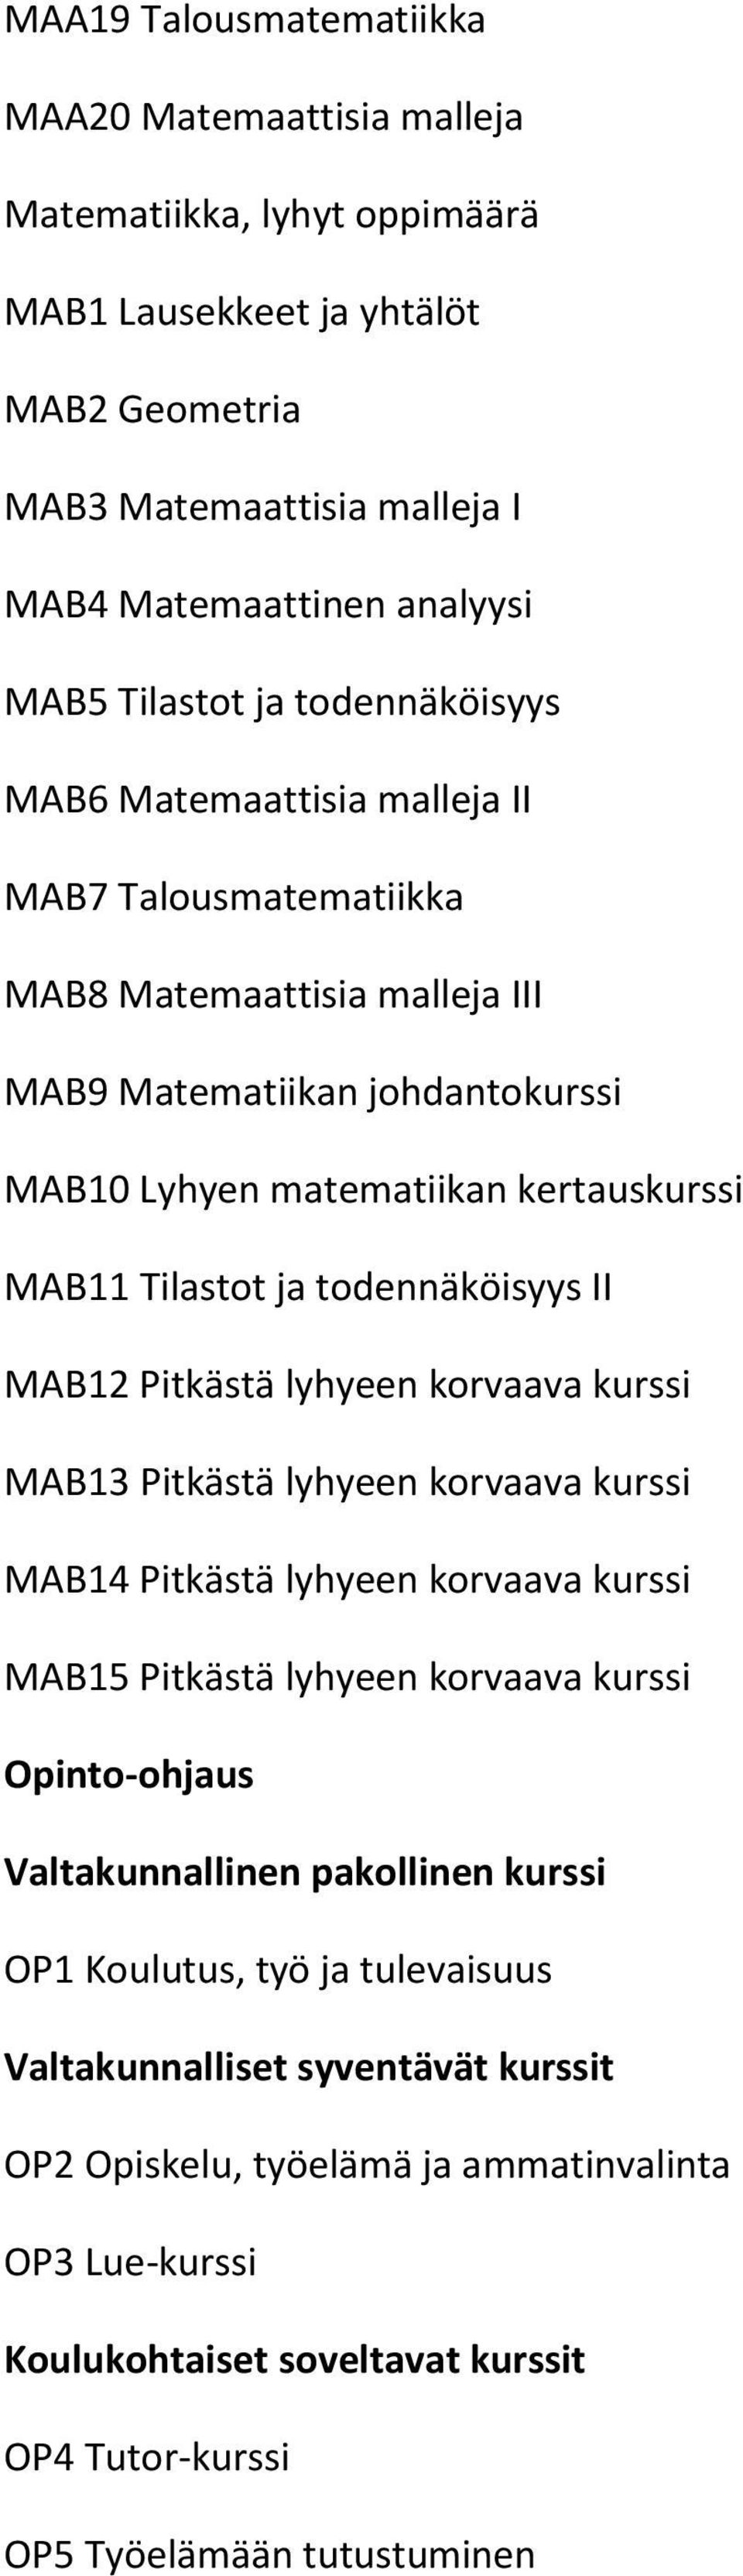 MAB11 Tilastot ja todennäköisyys II MAB12 Pitkästä lyhyeen korvaava kurssi MAB13 Pitkästä lyhyeen korvaava kurssi MAB14 Pitkästä lyhyeen korvaava kurssi MAB15 Pitkästä lyhyeen korvaava